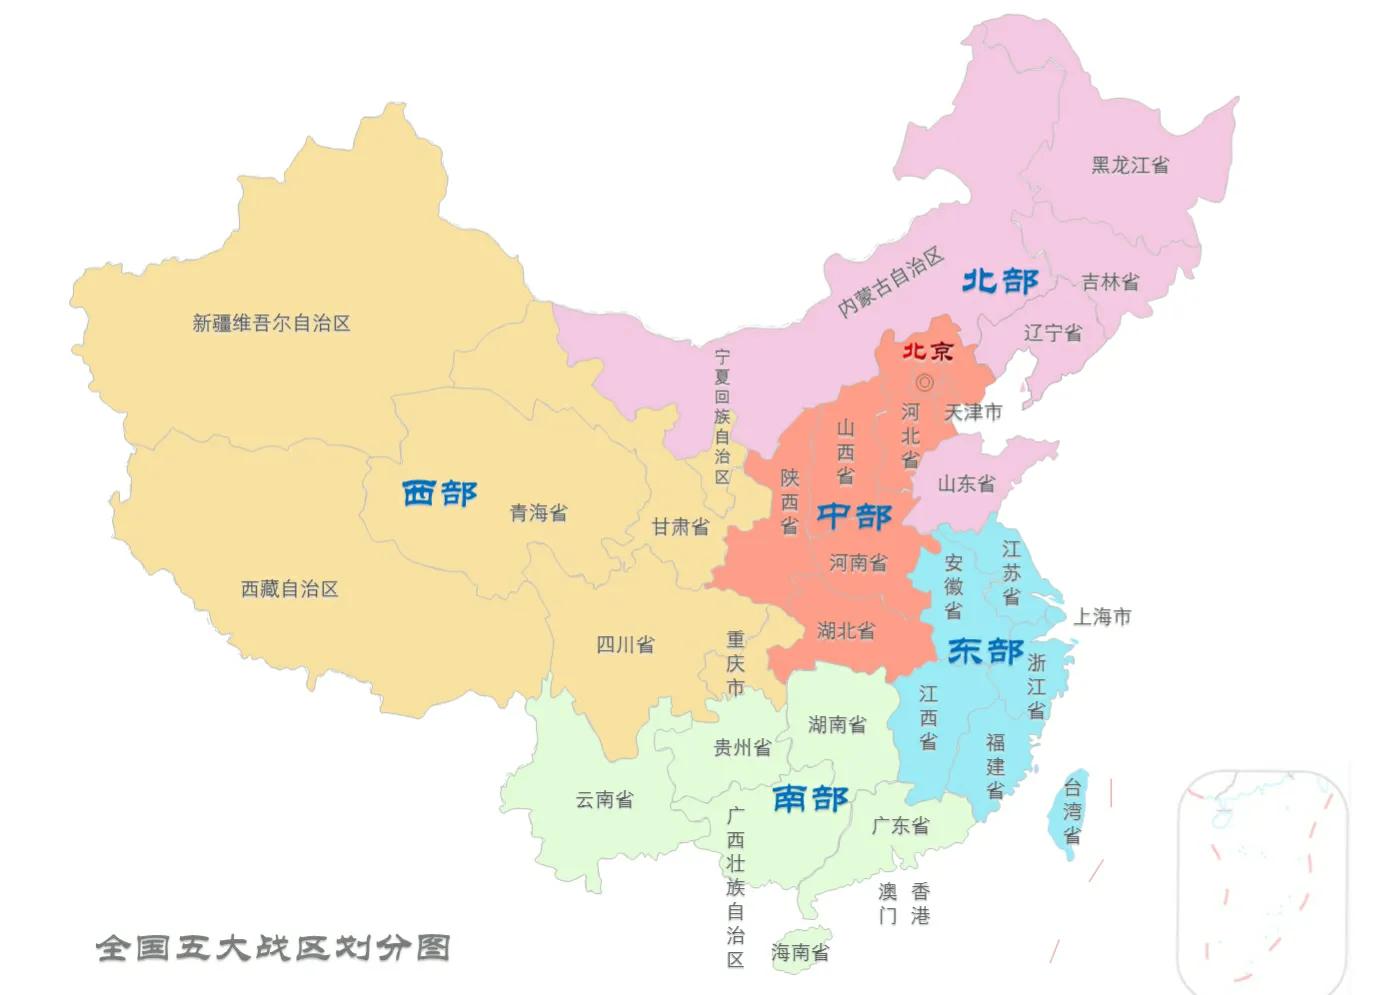 五大战区划分范围图（中国各大战区管辖范围）